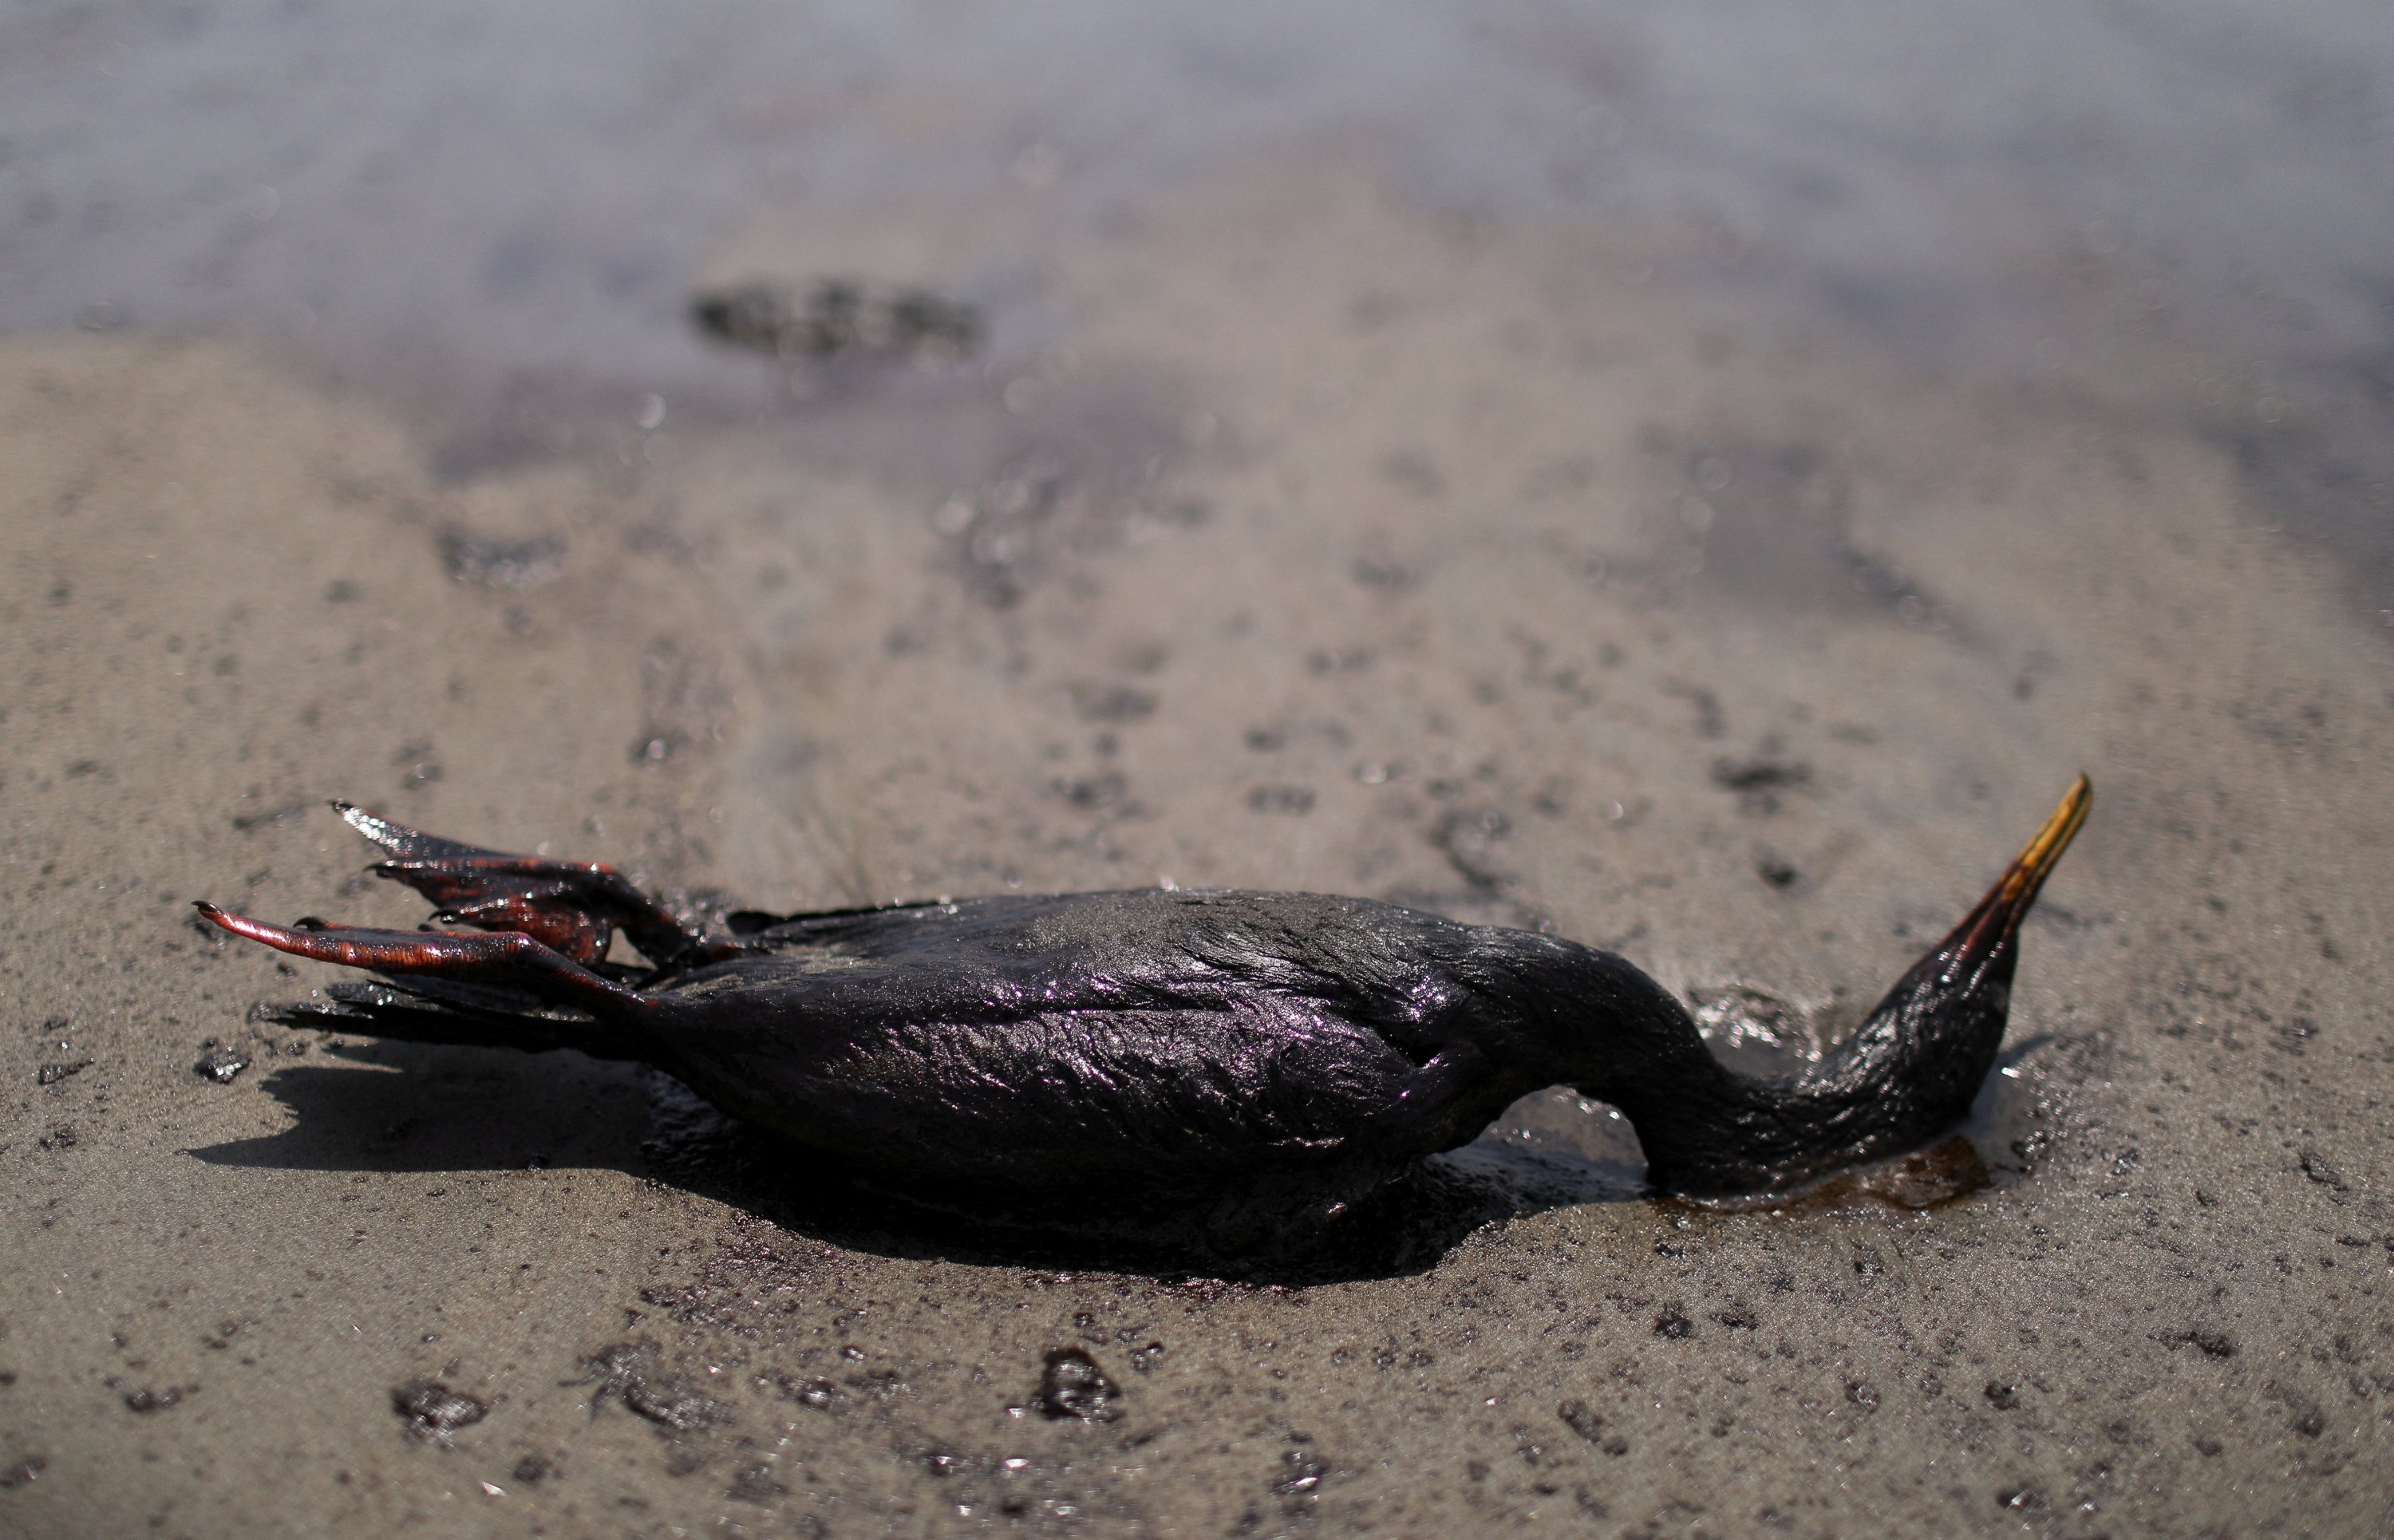 Seekor burung mati tergeletak di pantai selama pembersihan, menyusul tumpahan minyak yang disebabkan oleh gelombang abnormal, yang dipicu oleh letusan gunung berapi bawah laut besar-besaran di belahan dunia lain, di Tonga, di Ventanilla, Peru, 18 Januari 2022. (Reuters Foto)